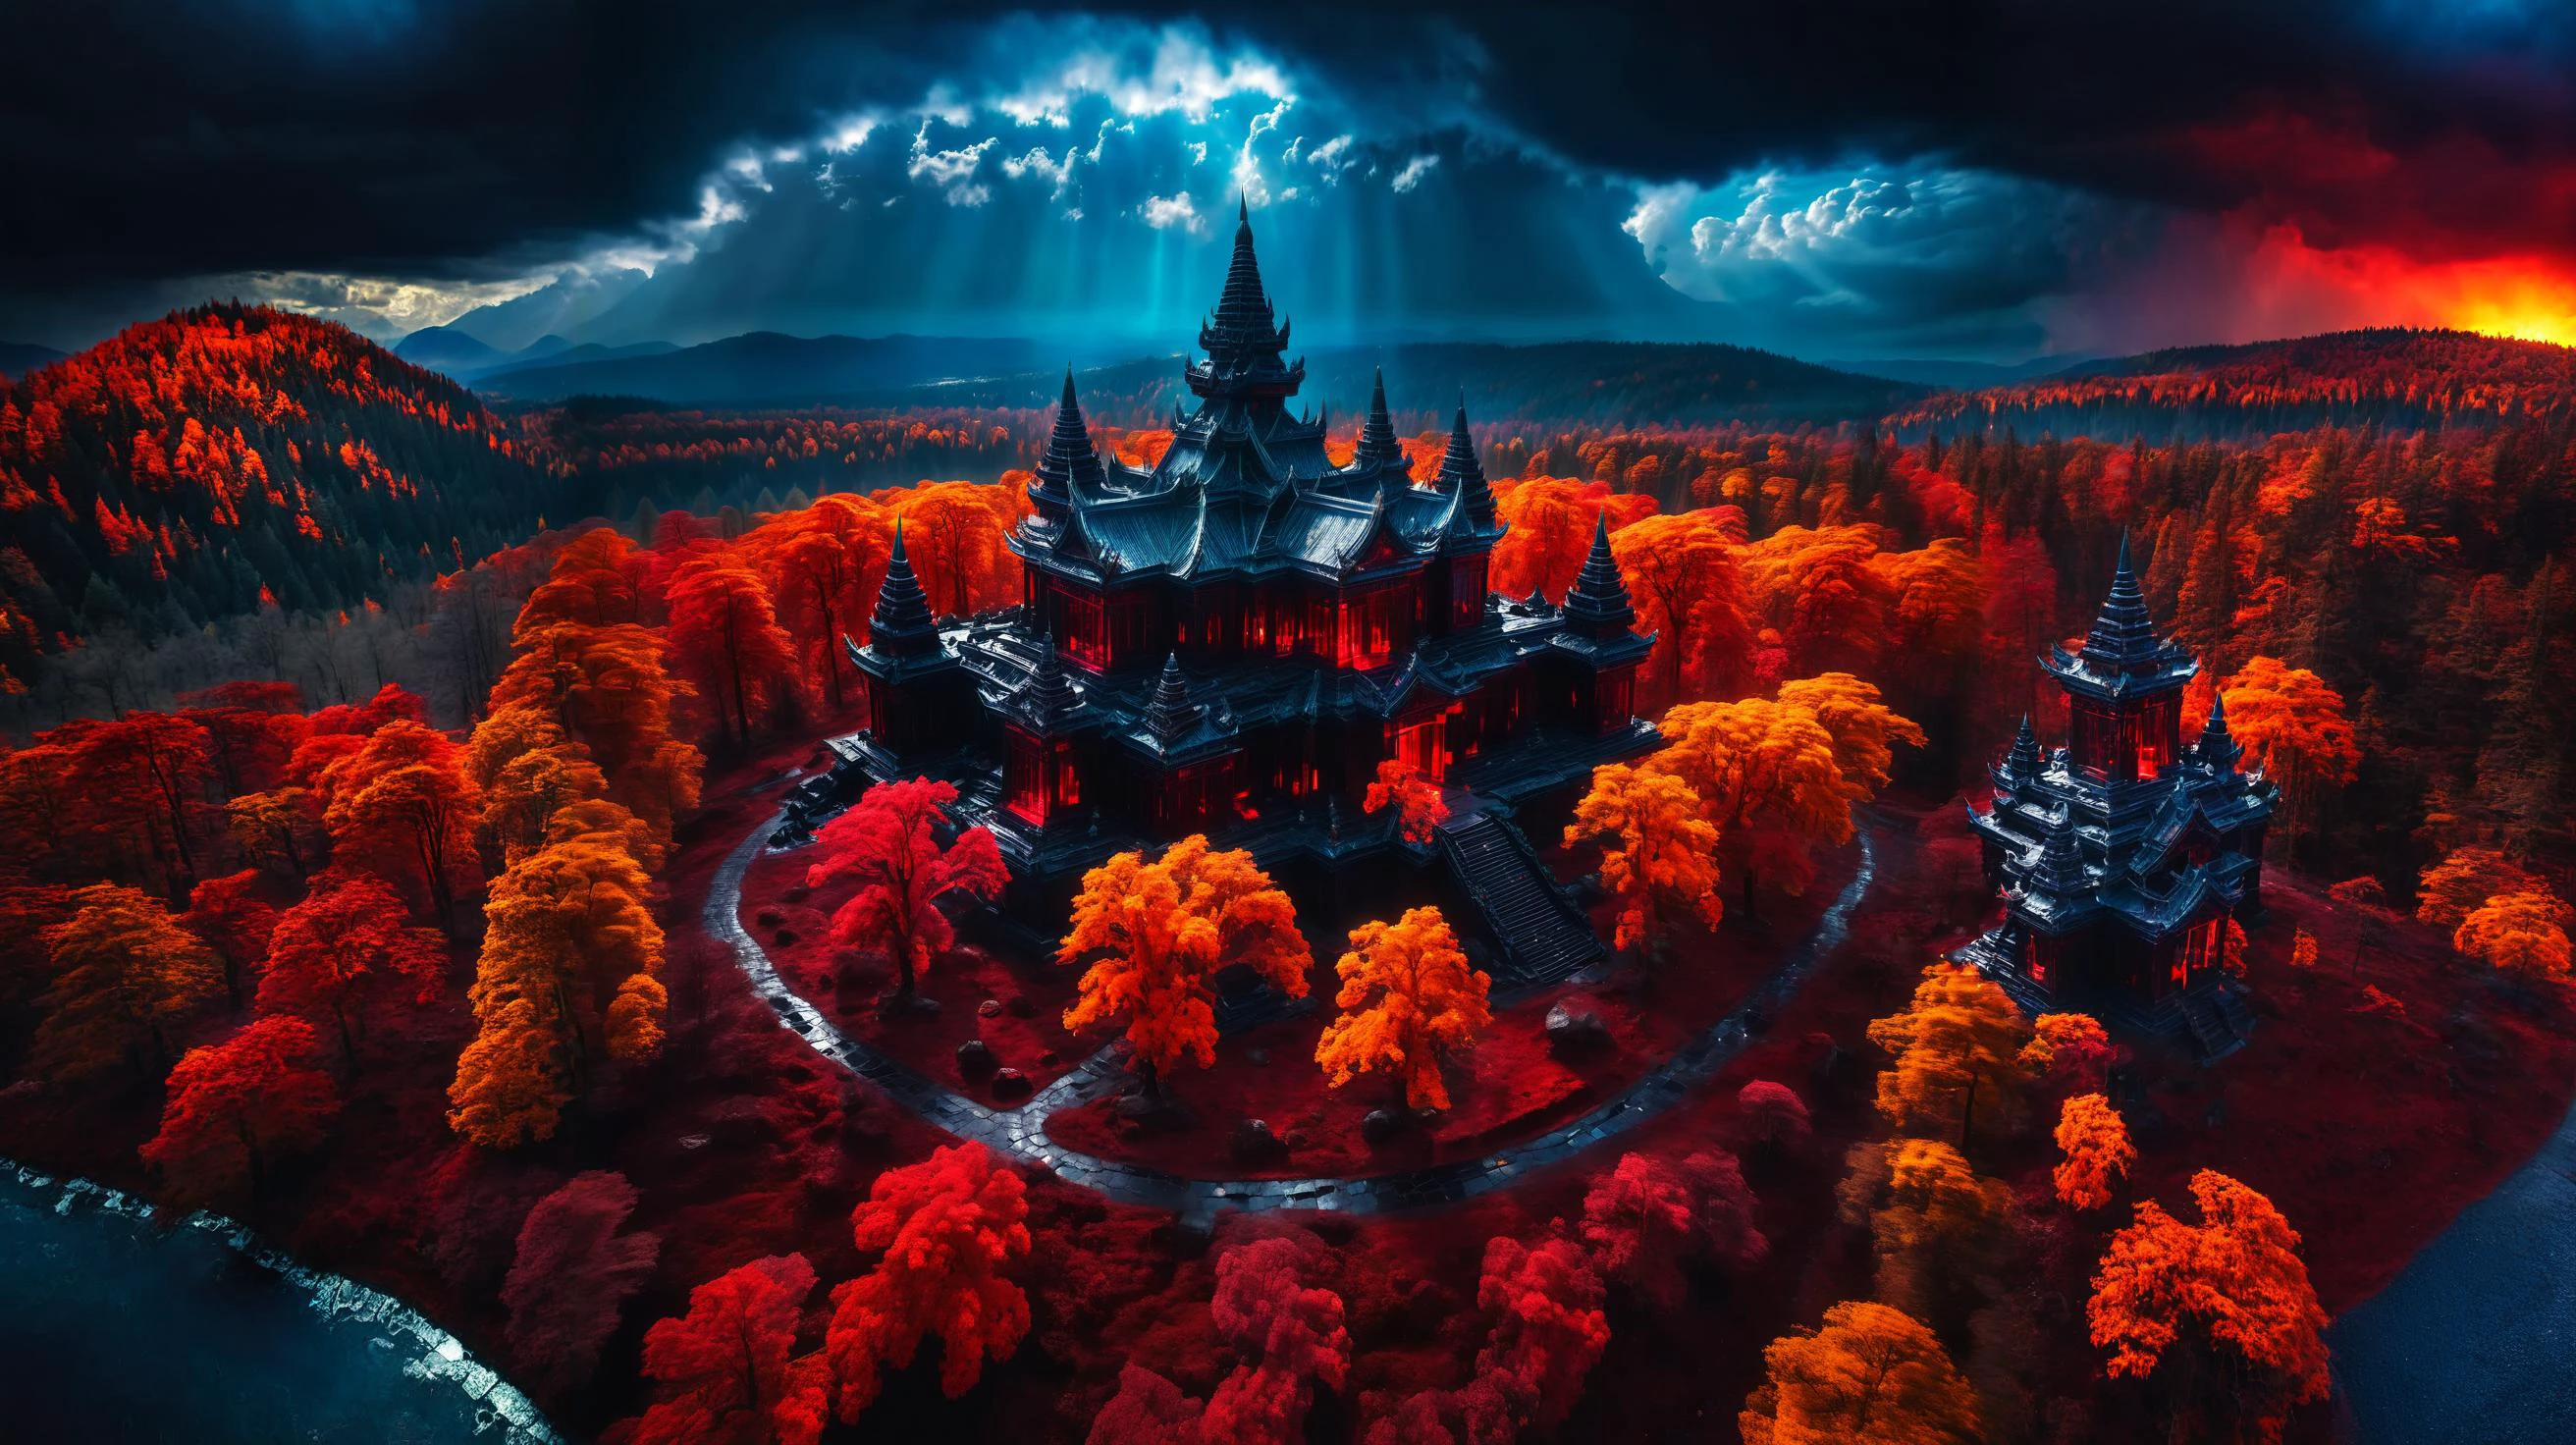 古老的黑色寺庙被红光闪烁的森林包围, 地面由色彩鲜艳的反光玻璃制成, 轻微多云, 戈德雷, 航拍照片, 宽视野, 戏剧性的灯光黑暗